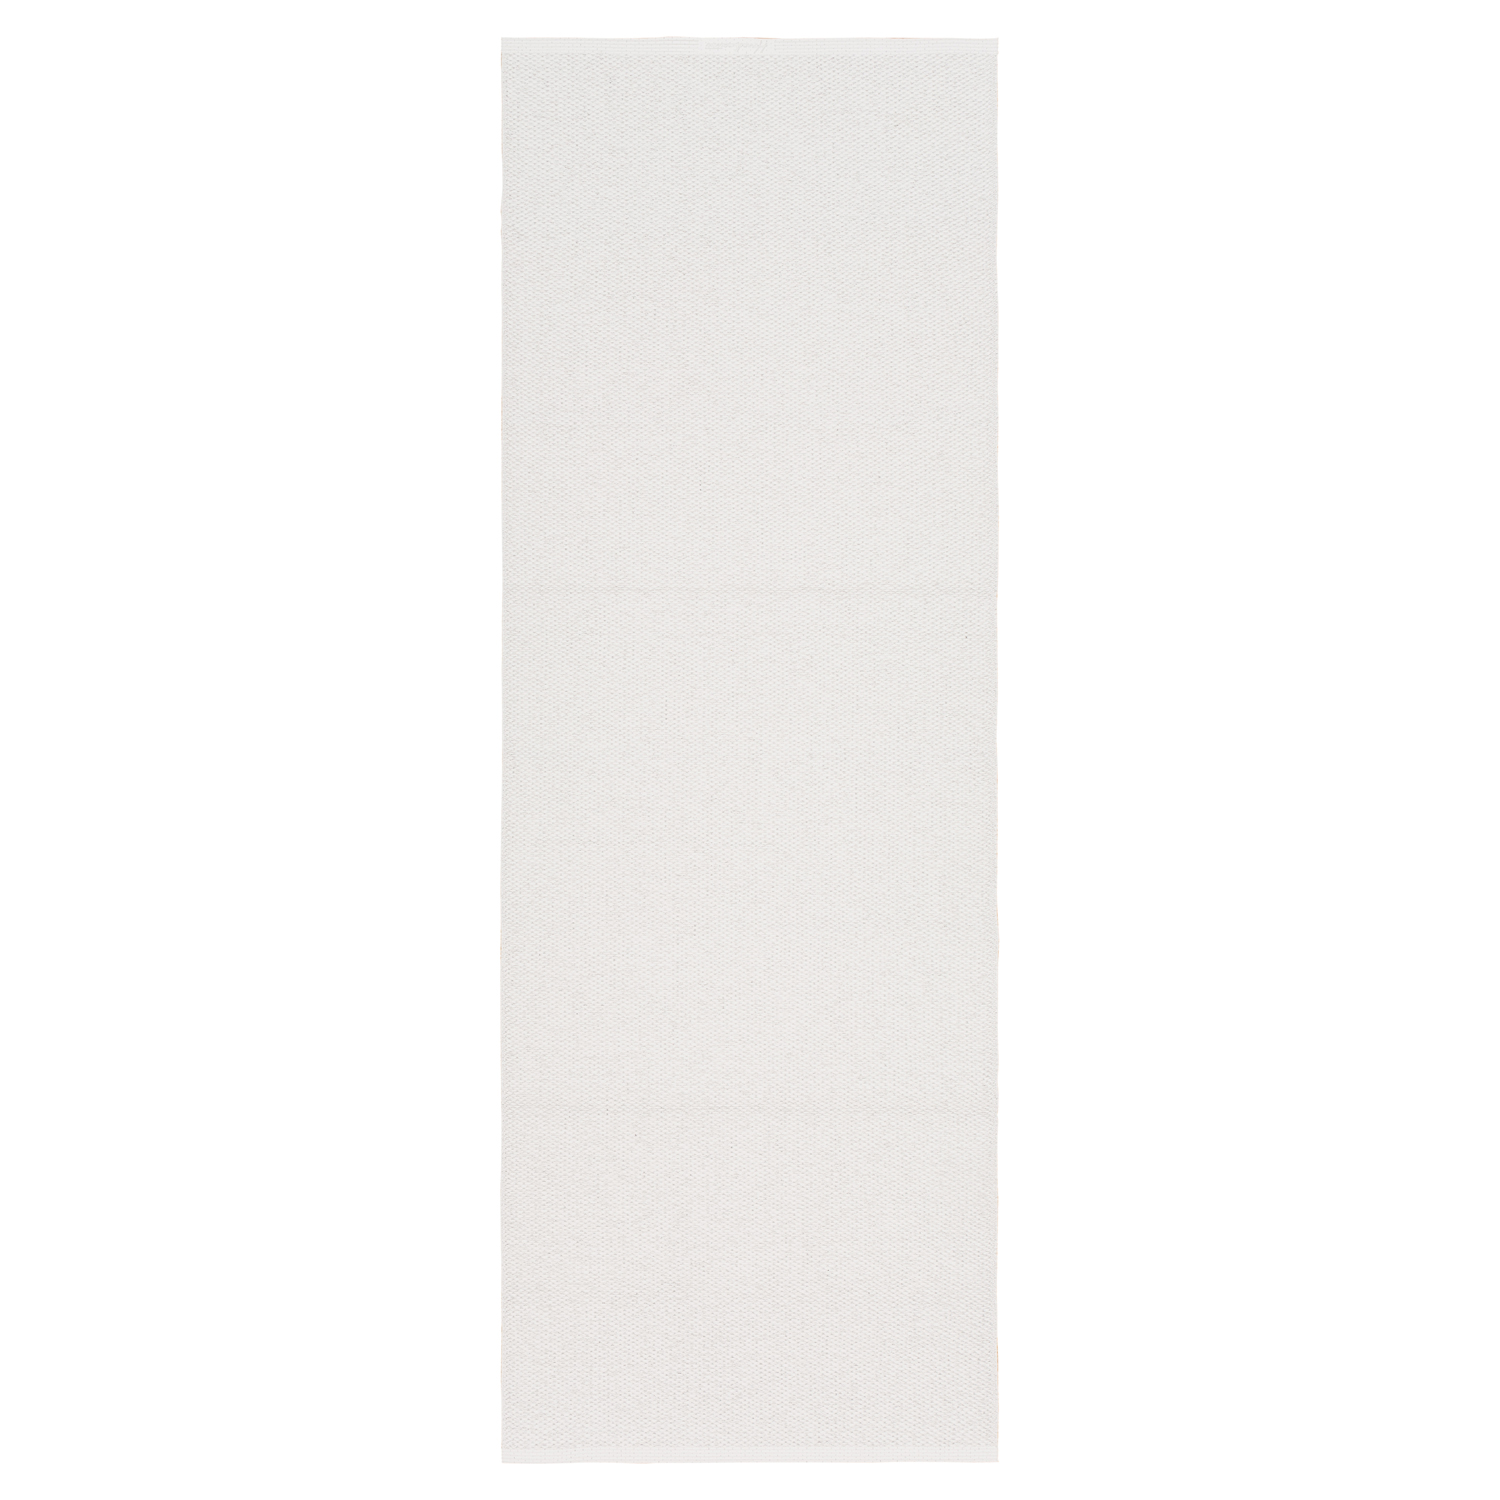 Horredsmattan Teppich Solo White für Innen und Aussen Made in Sweden since 1956 UV-Beständig